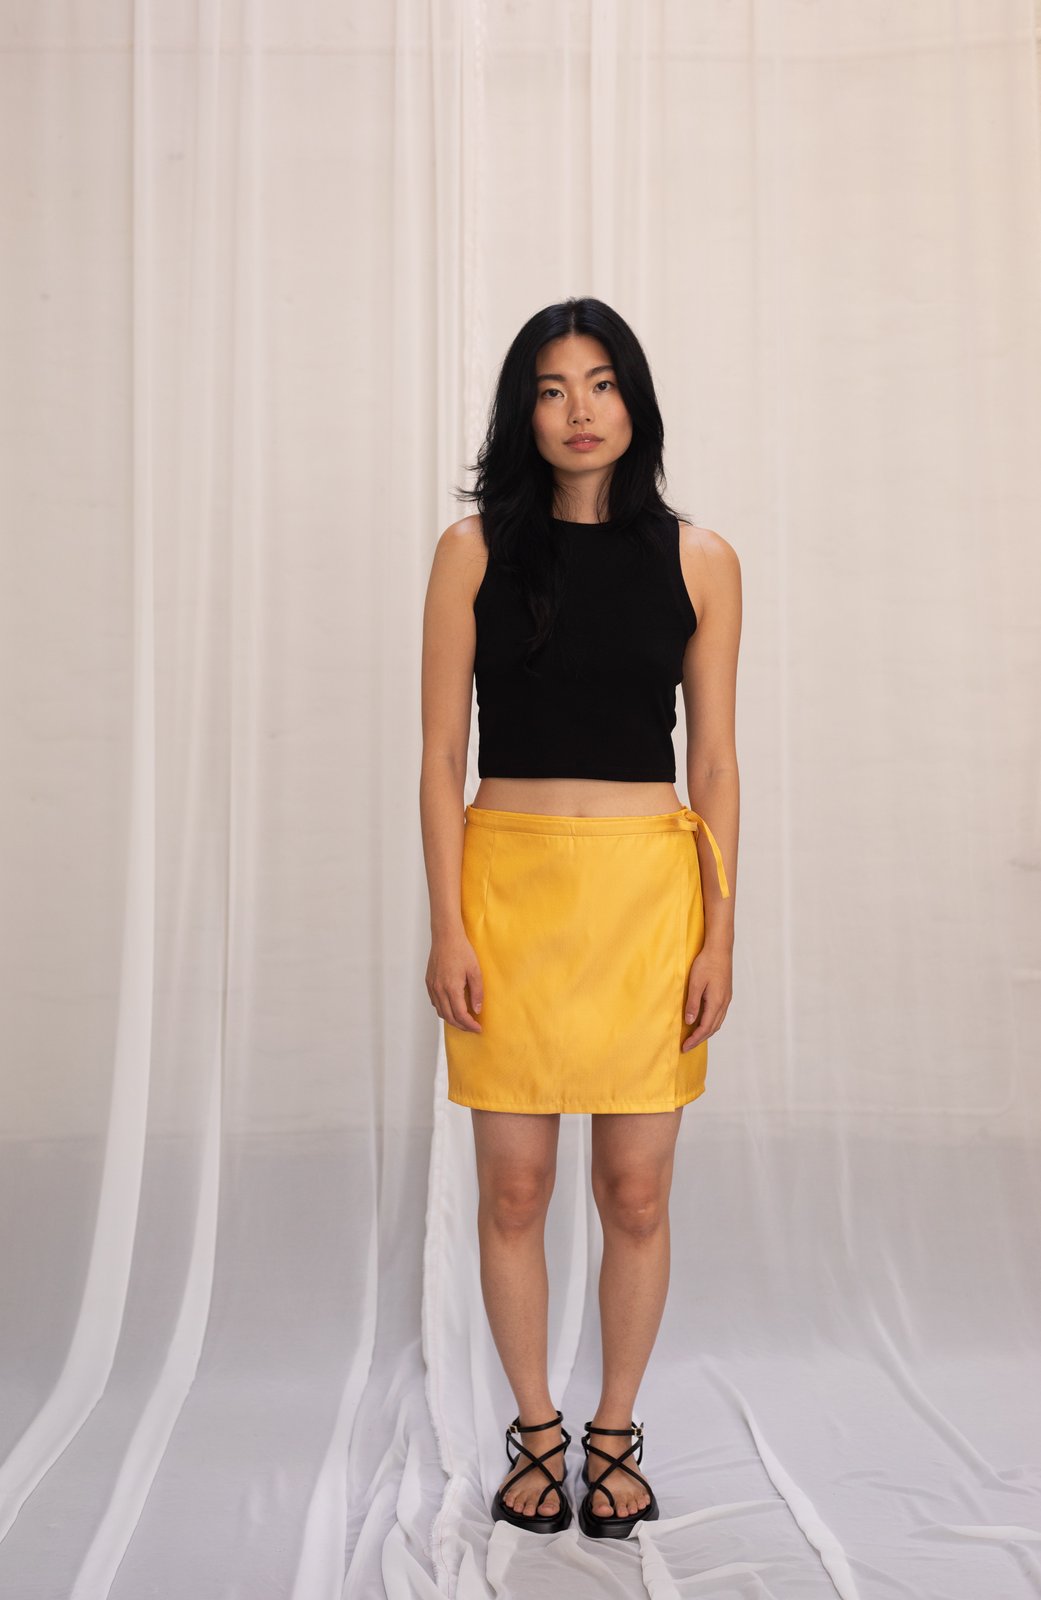 ON SALE Sunny Silk Wrap Skirt 95 Eur -50% NOW 47.50 Eur | oya 